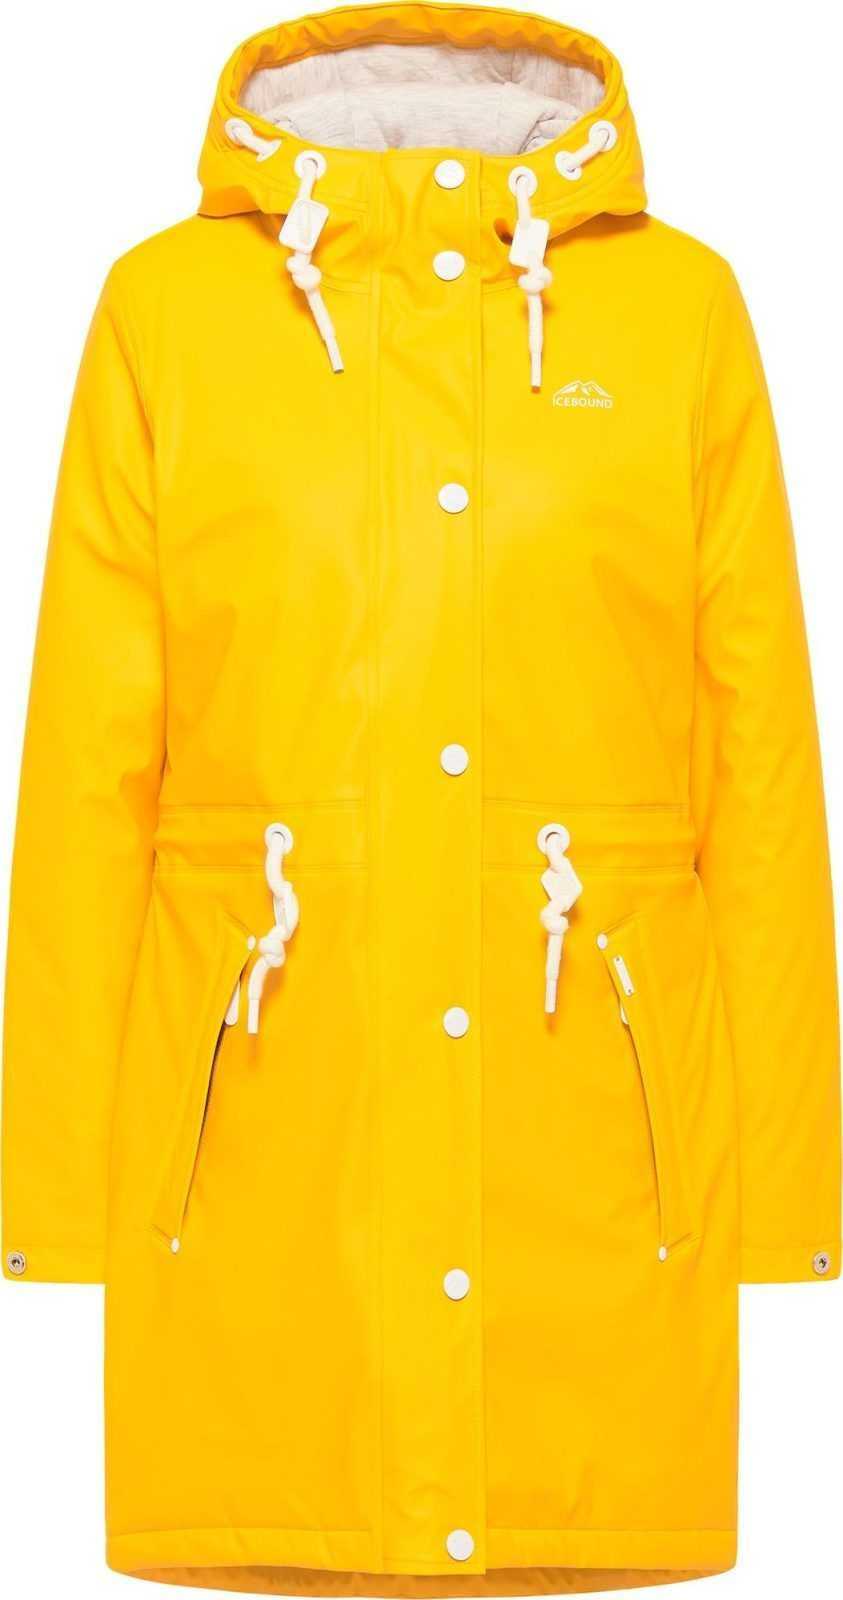 ICEBOUND Přechodný kabát žlutá / bílá